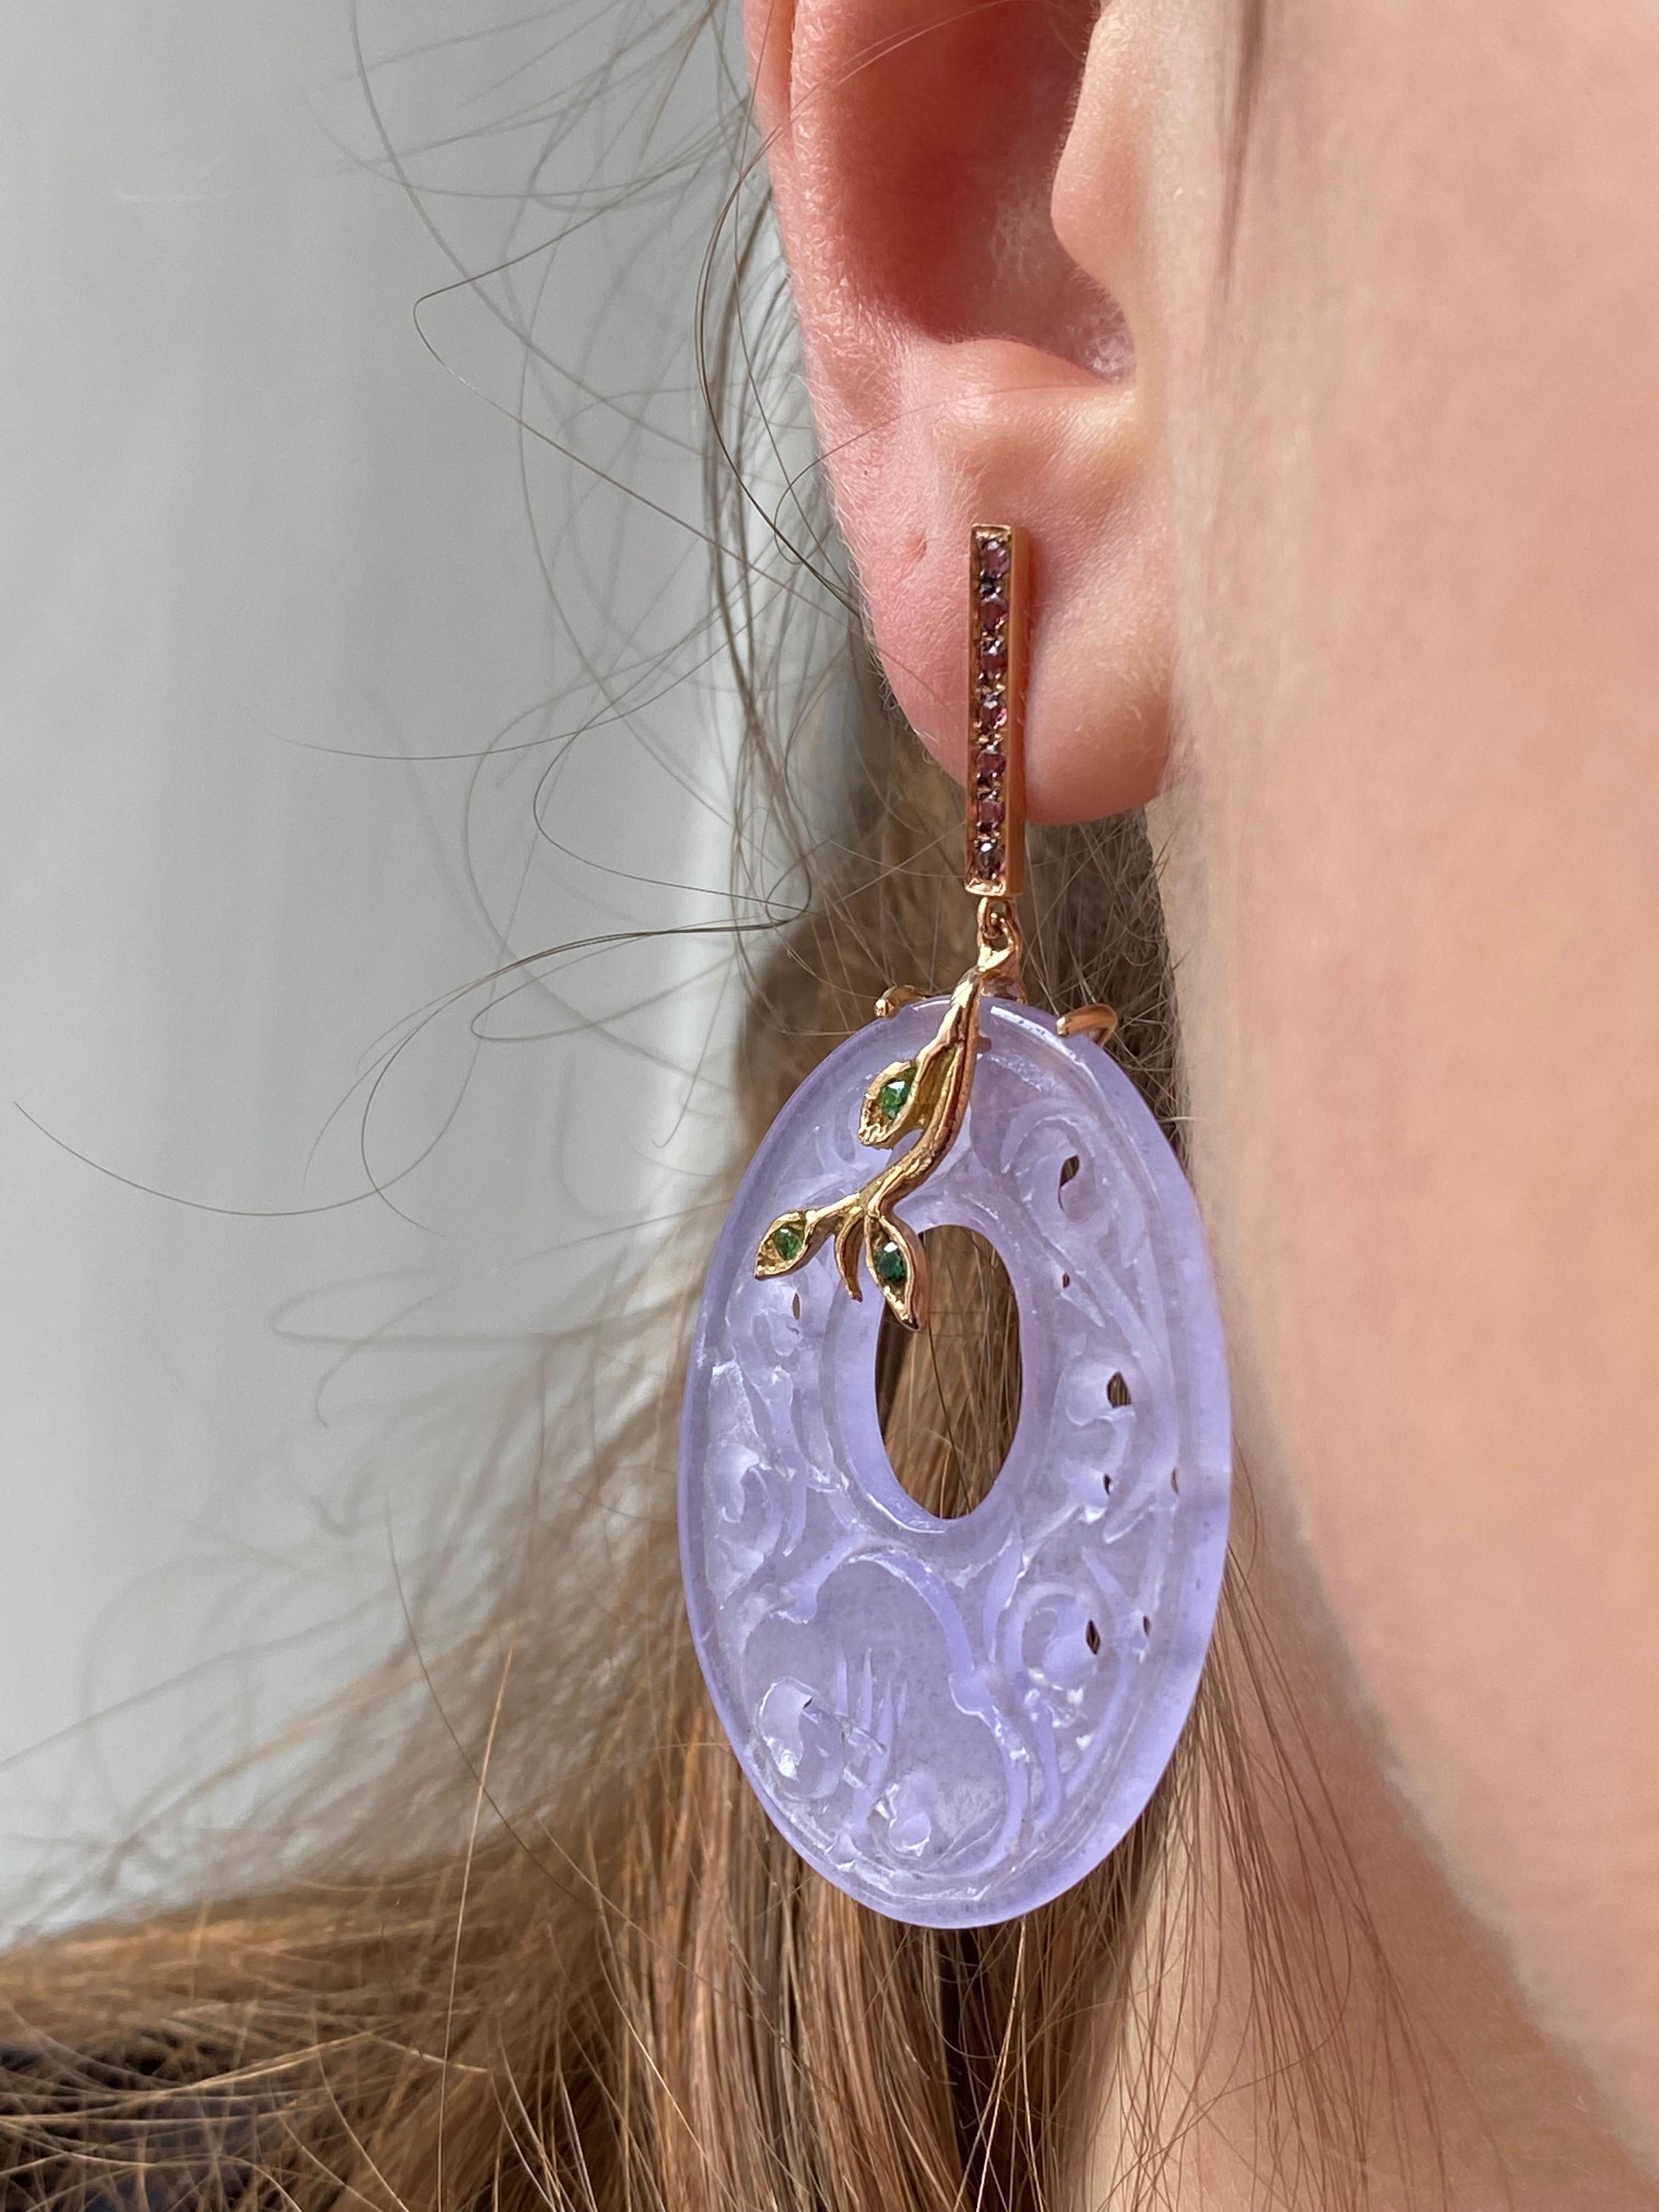 Entdecken Sie den Inbegriff von Anmut und Raffinesse mit Rossella Ugolinis exquisiten, handgefertigten Ohrringen aus lilafarbenem Rosenquarz, die sorgfältig aus 18 Karat Gelbgold gefertigt sind. Diese Ohrringe sind eine wahre Verkörperung zeitloser